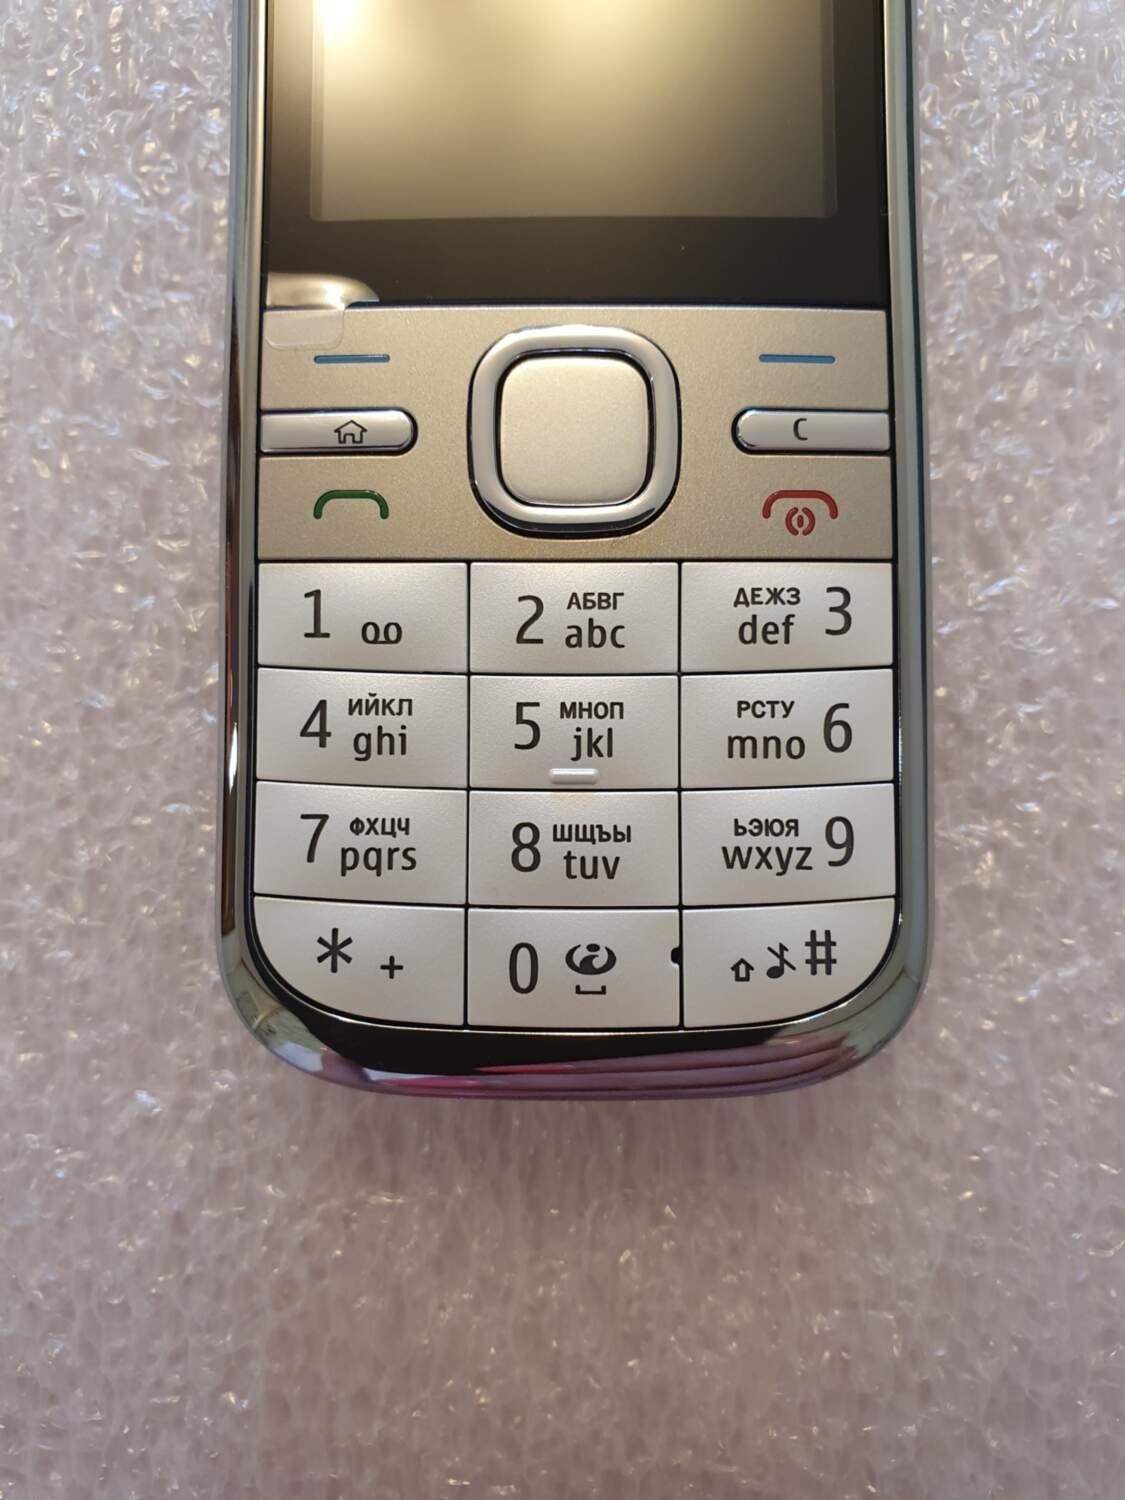 Мобільний телефон Nokia C5 (оригінал) Brown 1050 мАч